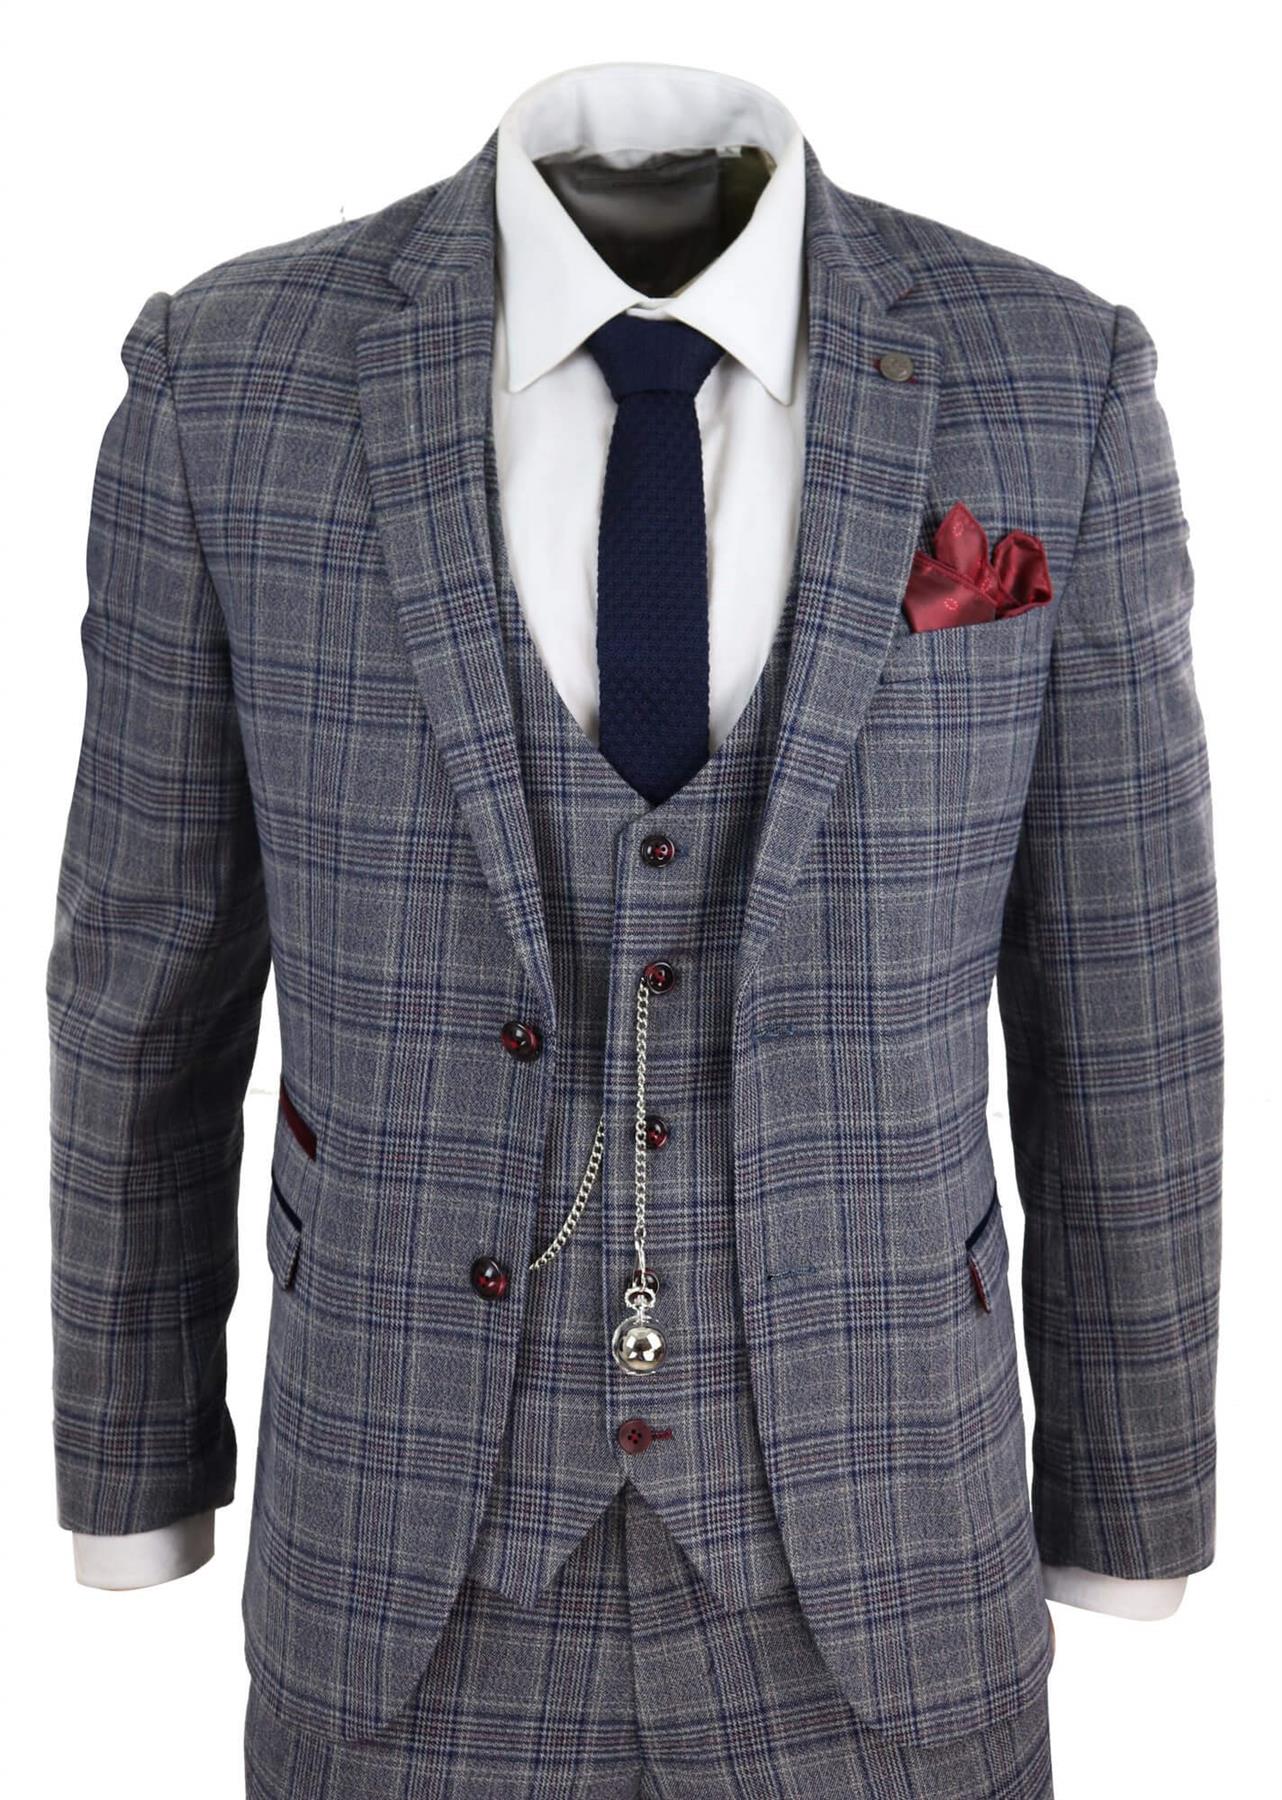 Mens 3 Piece Grey Herringbone Tweed Check Suit